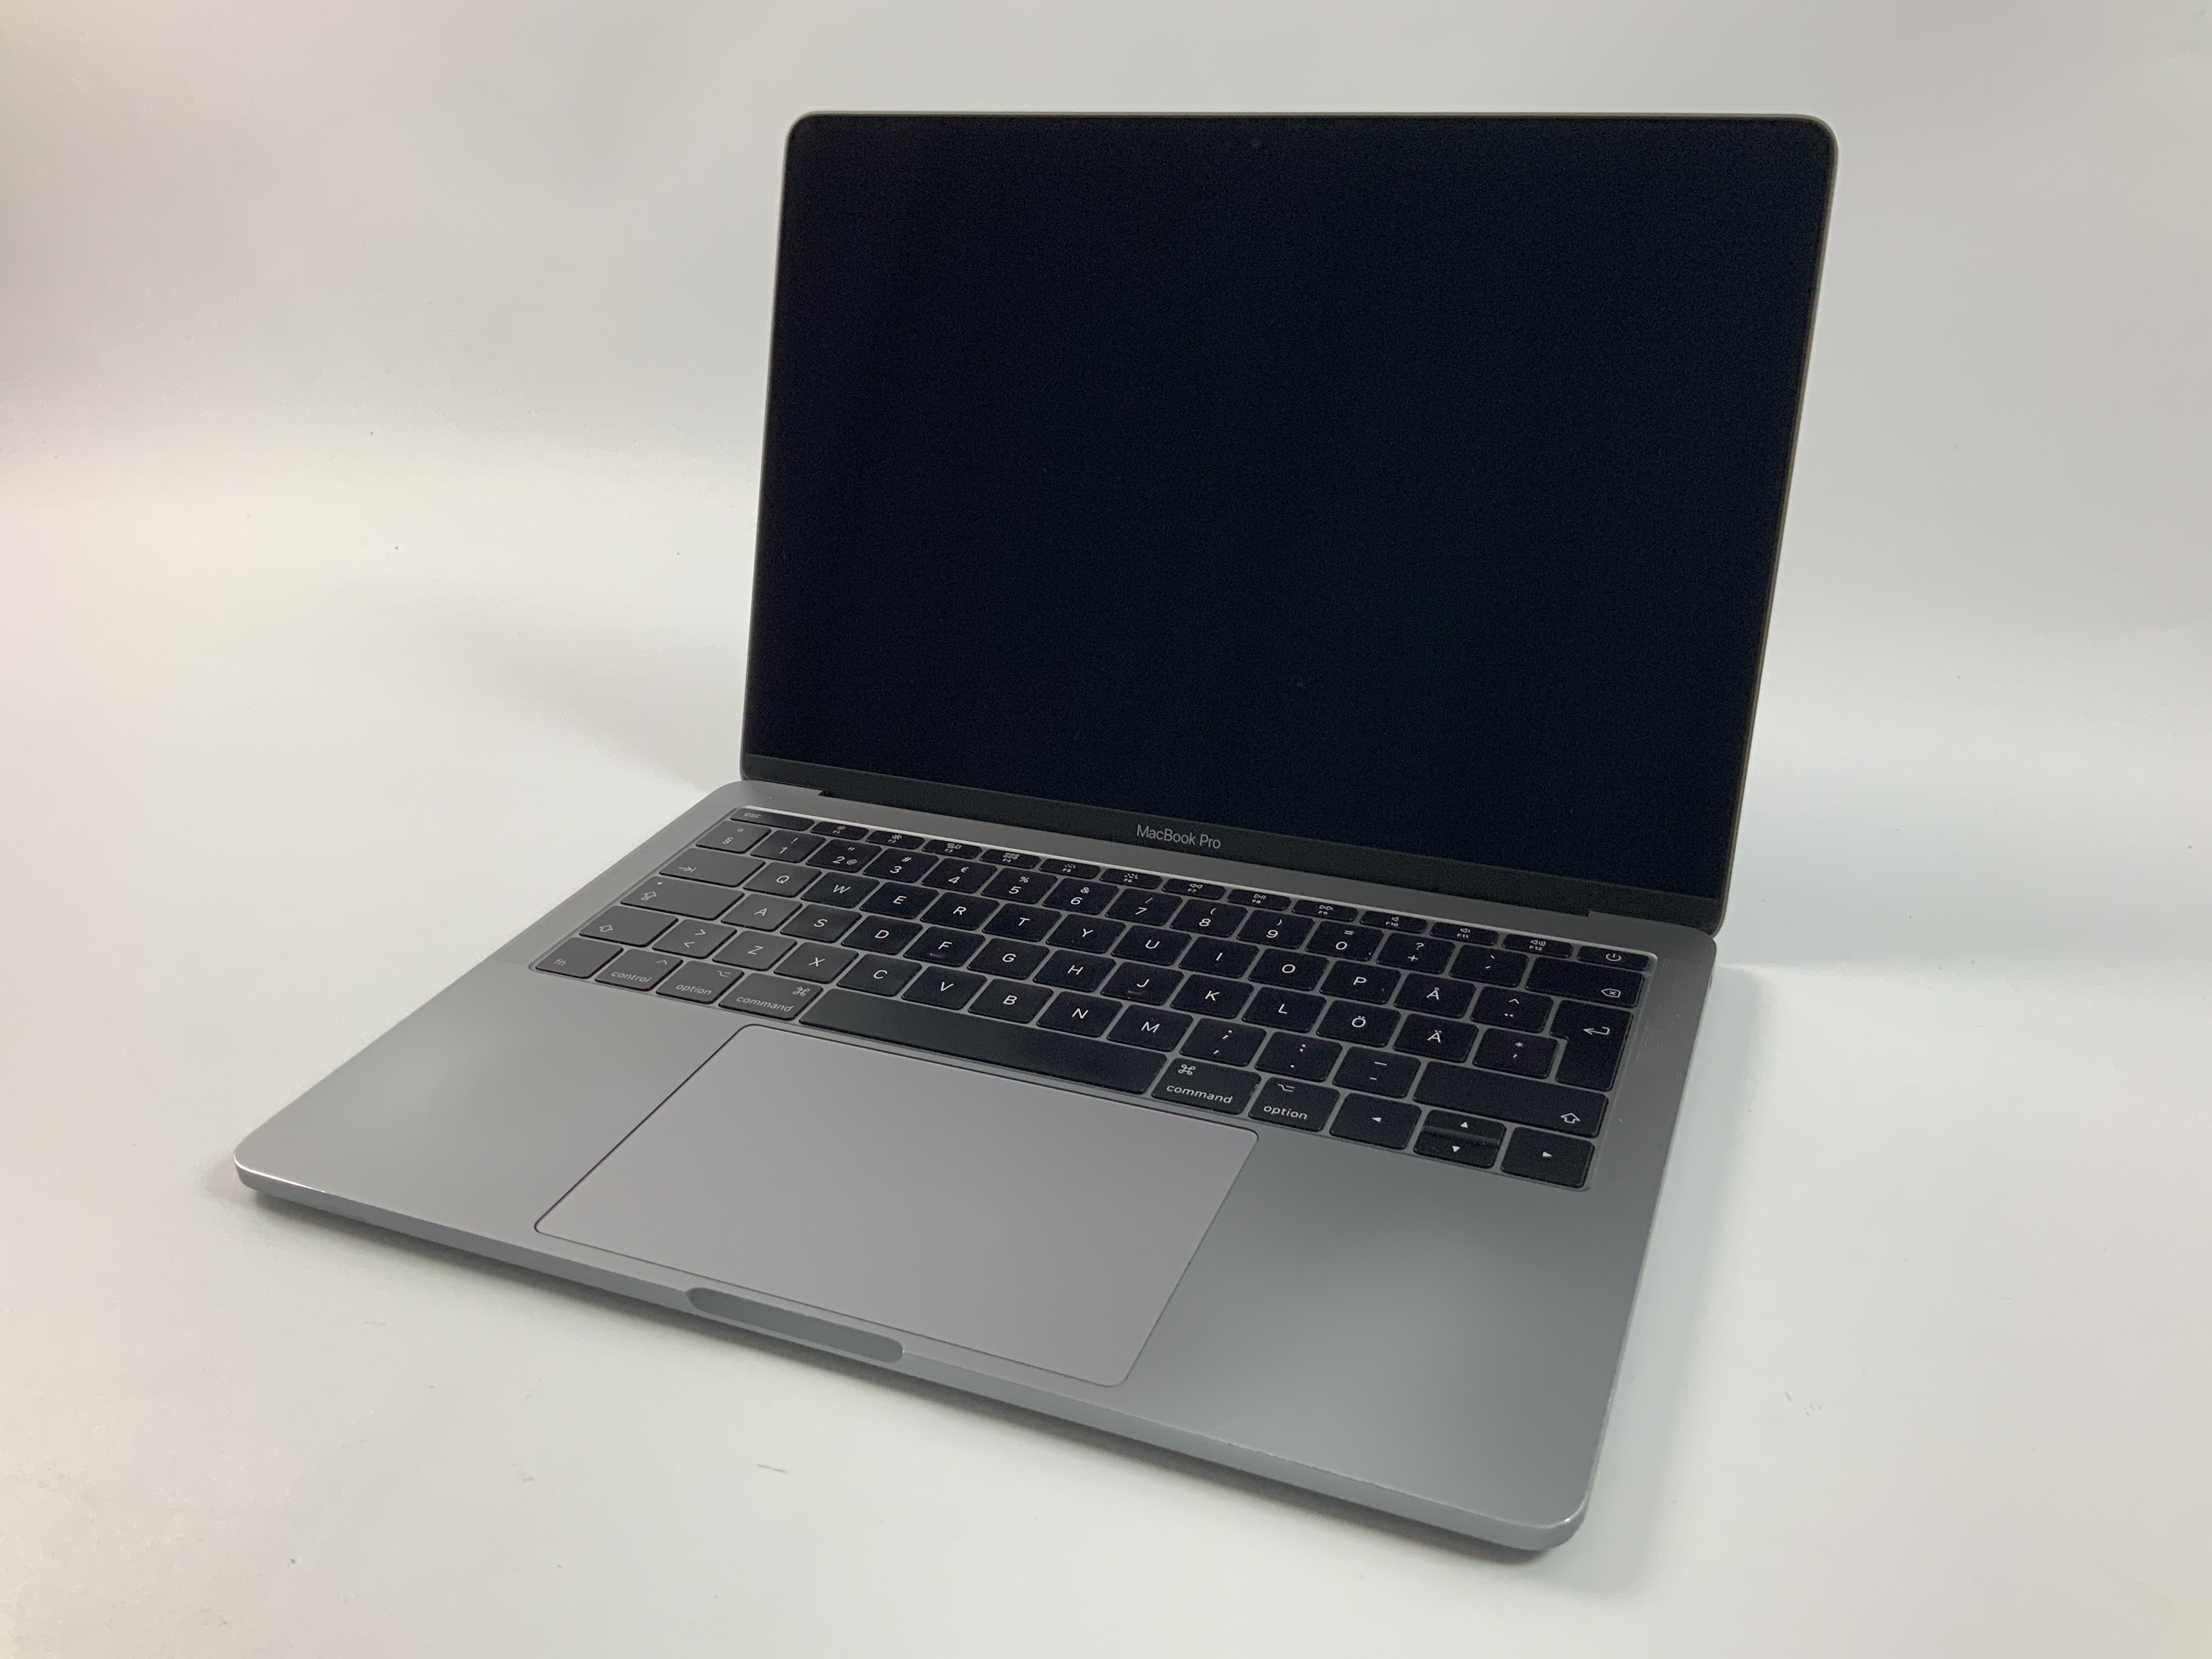 MacBook Pro 13" 2TBT Mid 2017 (Intel Core i5 2.3 GHz 8 GB RAM 128 GB SSD), Space Gray, Intel Core i5 2.3 GHz, 8 GB RAM, 128 GB SSD, obraz 1